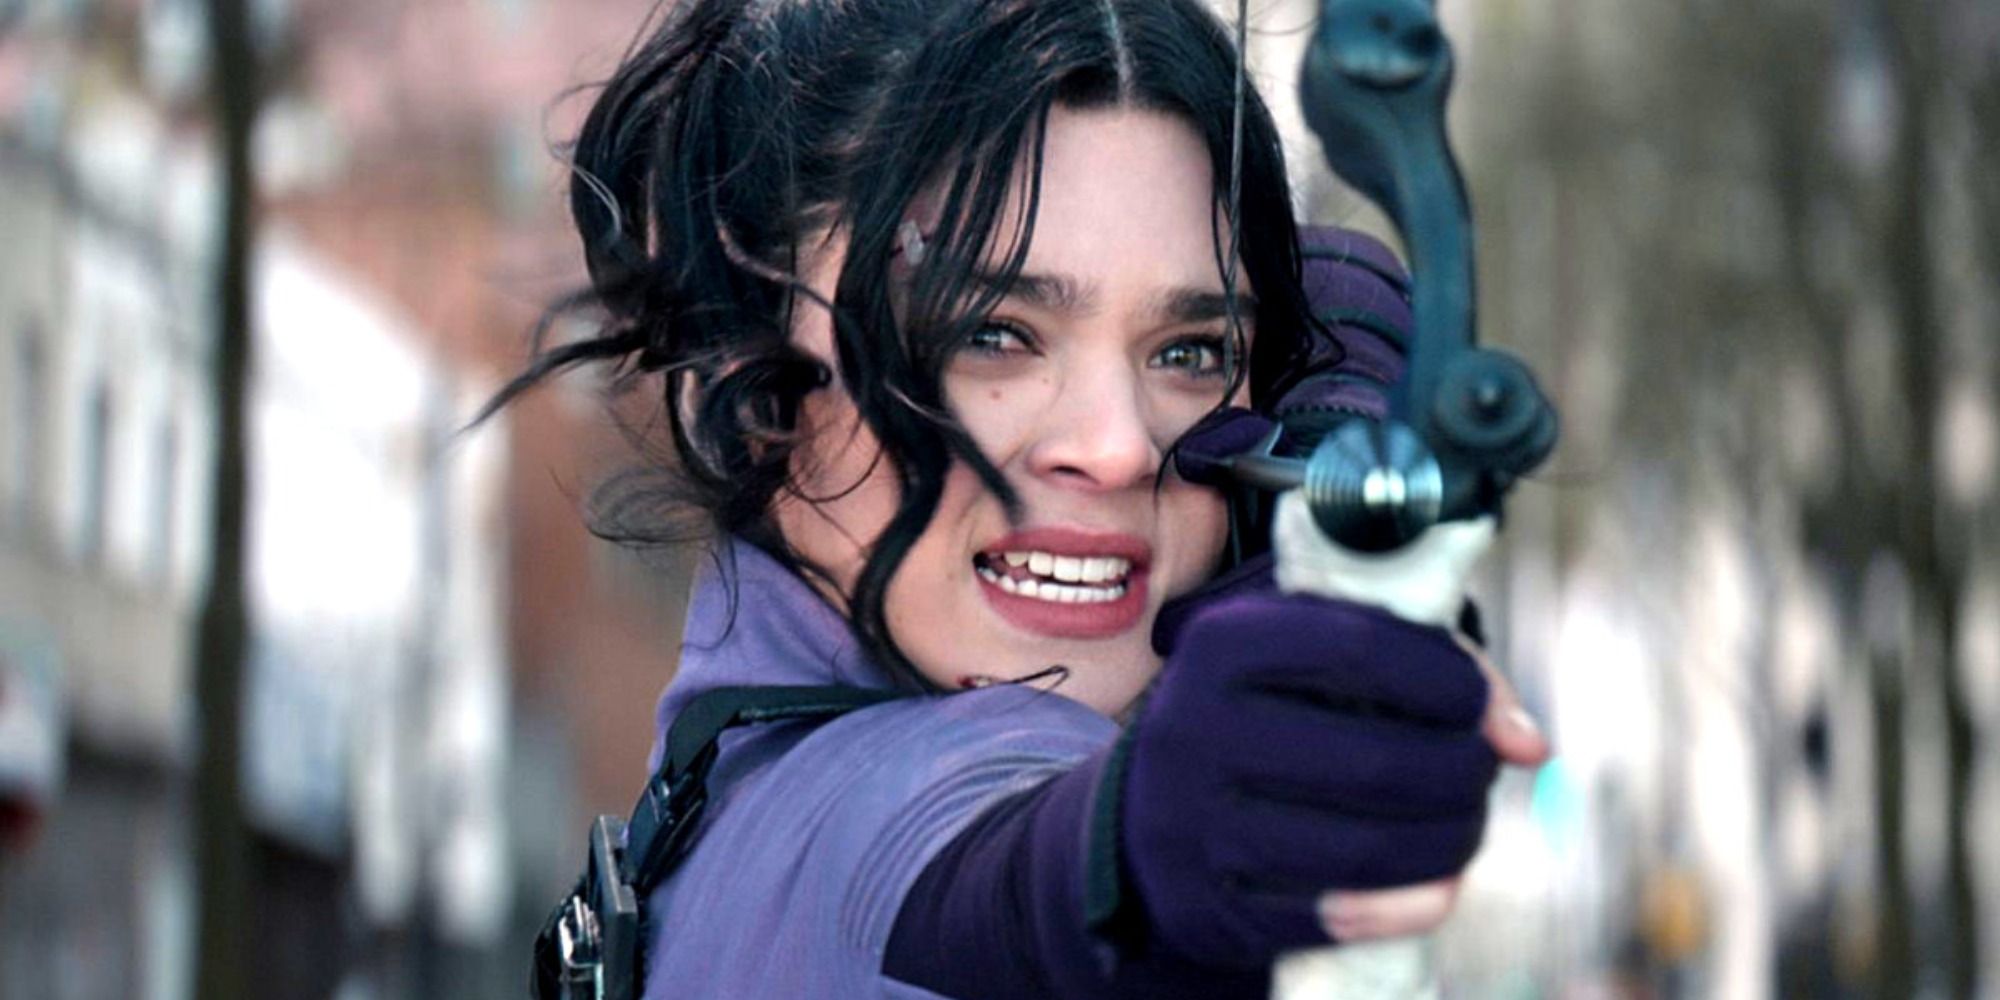 Kate Bishop shooting an arrow in Hawkeye.